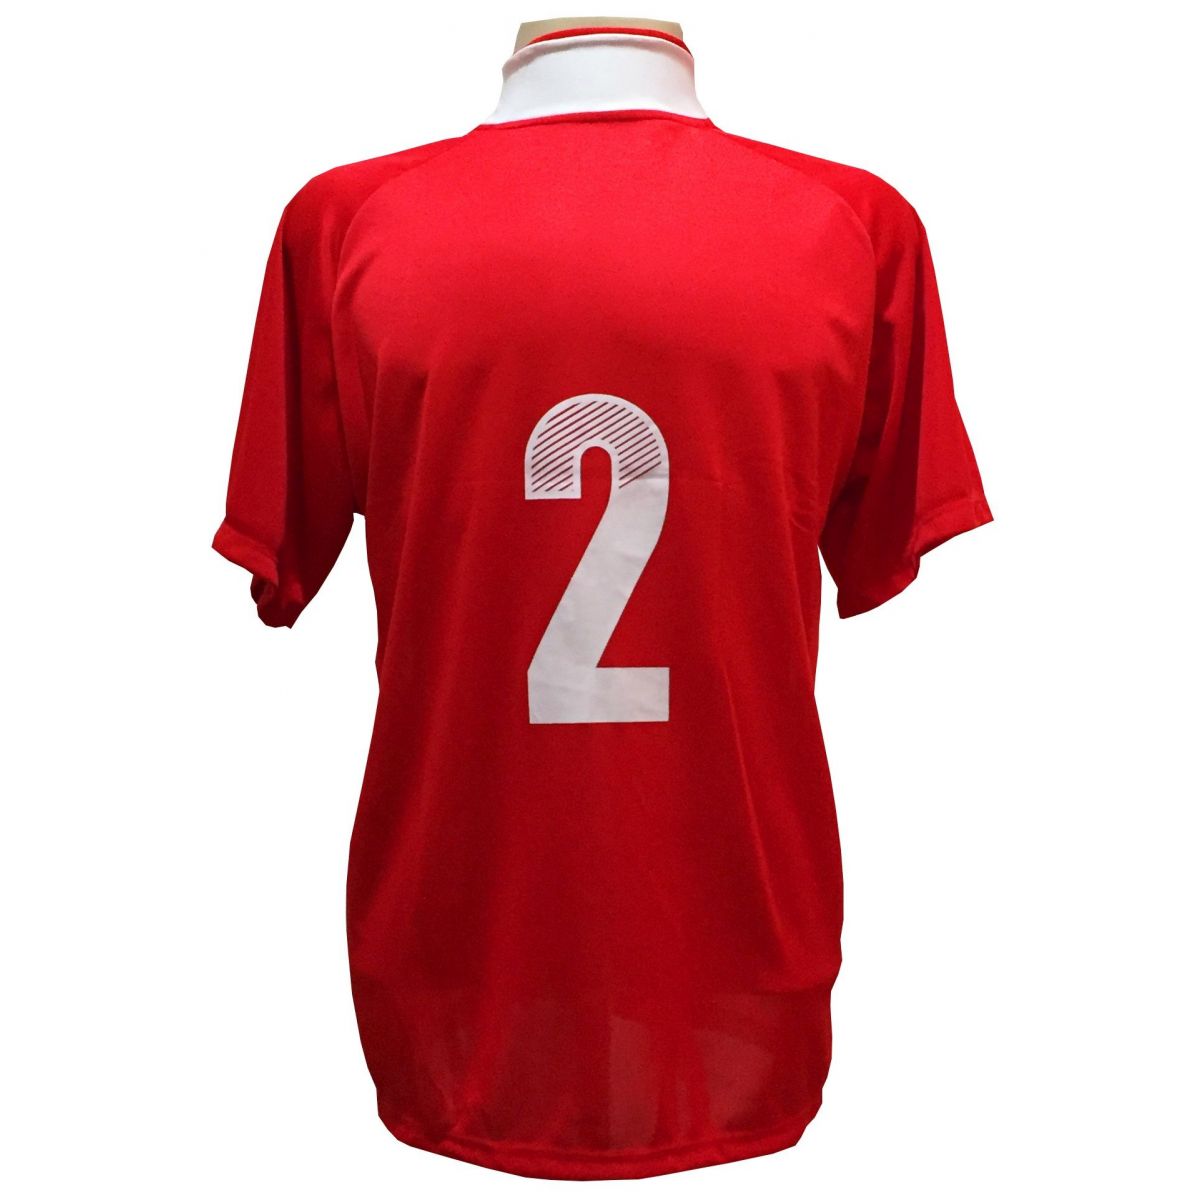 Uniforme Esportivo com 18 camisas modelo Milan Vermelho/Branco + 18 calções modelo Madrid Vermelho + Brindes